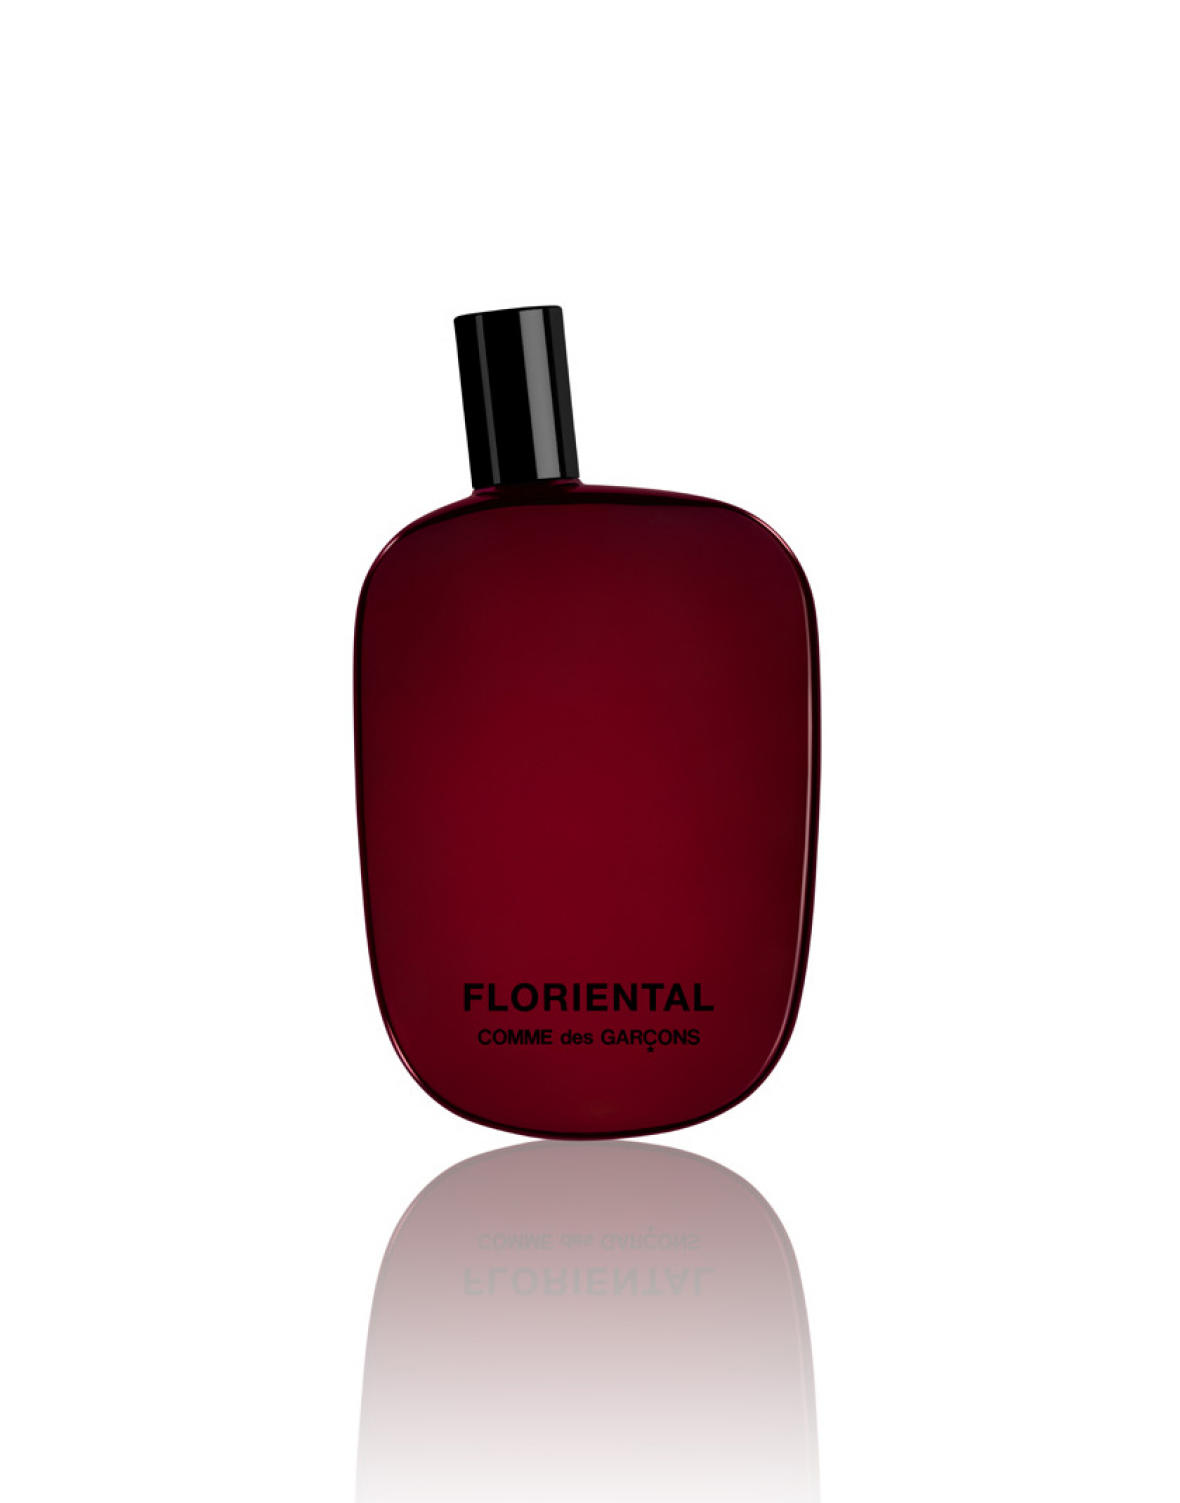 Comme des Garçons Presents Its New “Floriental” Fragrance